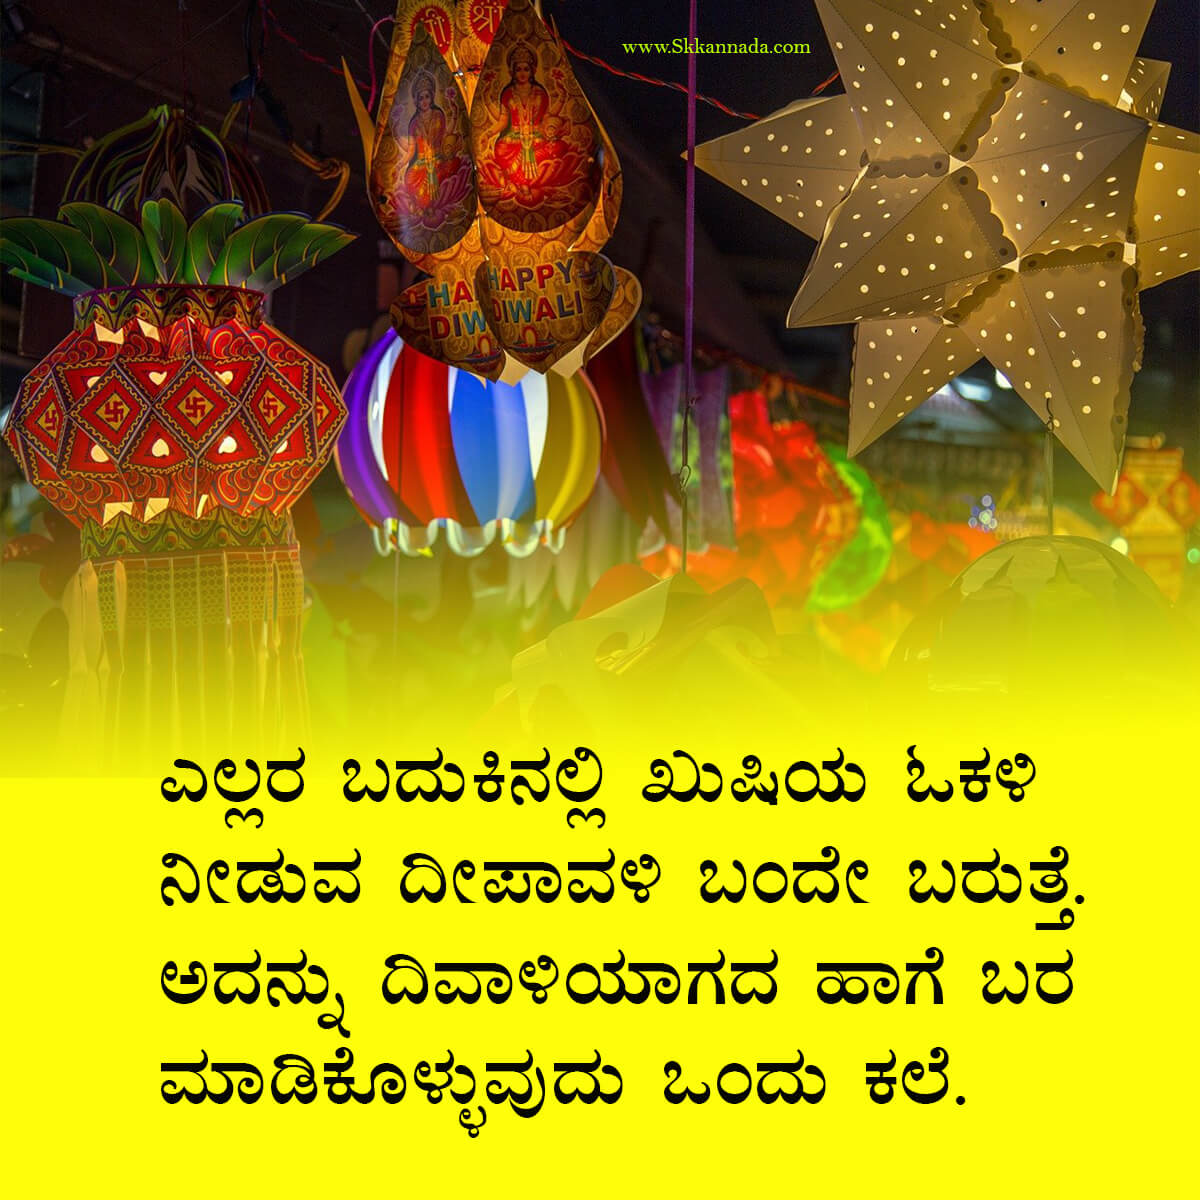 ದೀಪಾವಳಿಯ ಶುಭಾಶಯಗಳು - Deepavali Wishes in Kannada